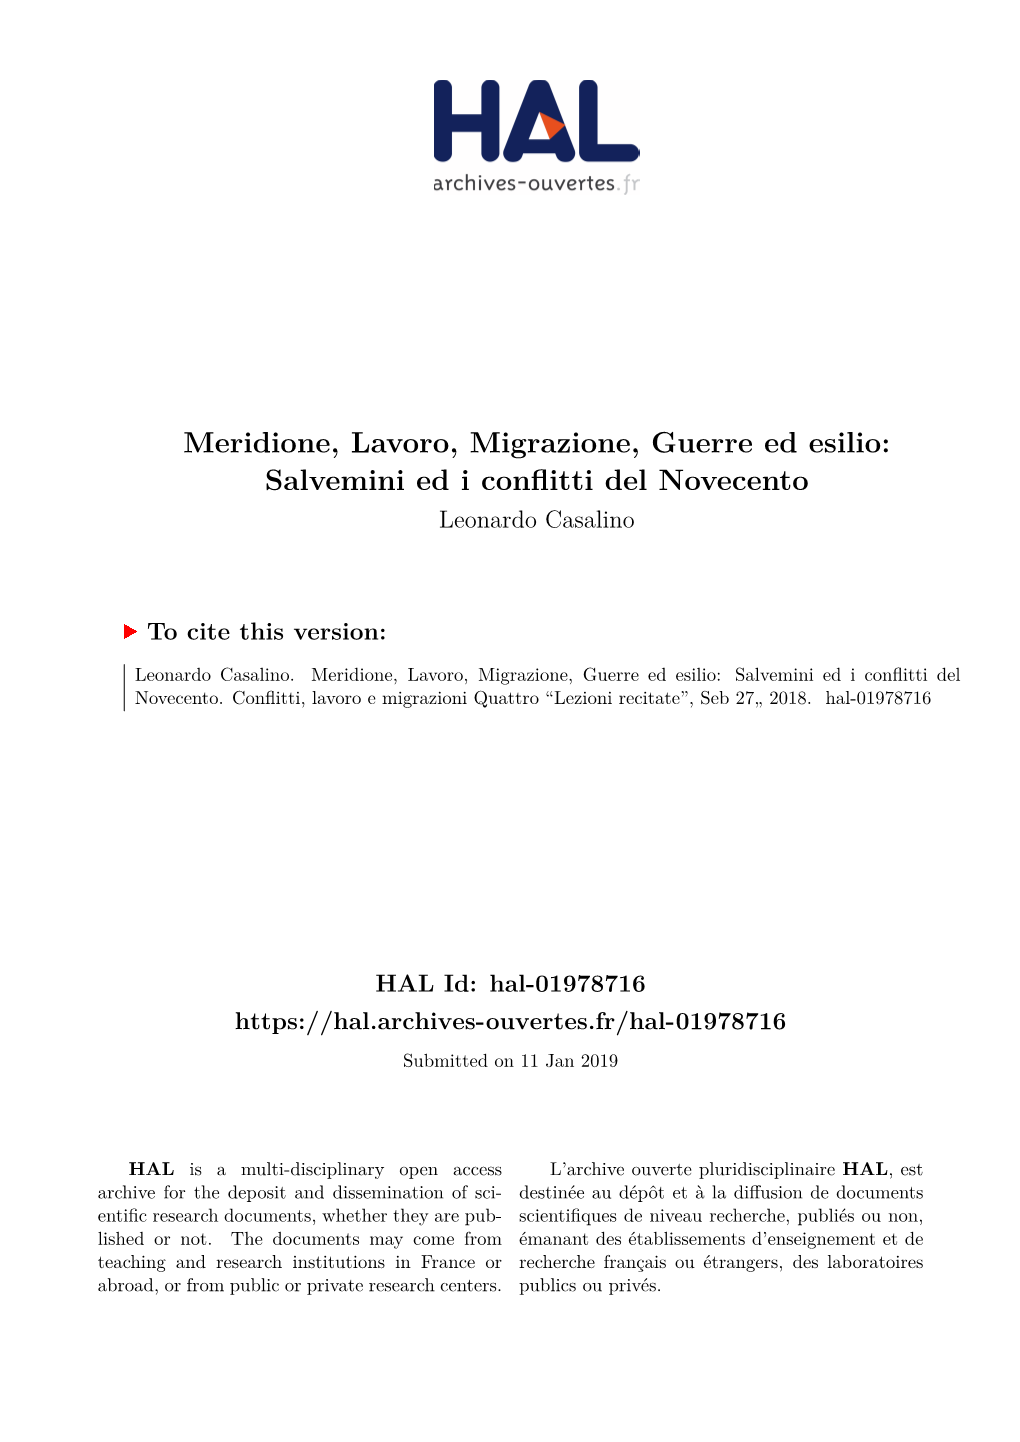 Meridione, Lavoro, Migrazione, Guerre Ed Esilio: Salvemini Ed I Conflitti Del Novecento Leonardo Casalino